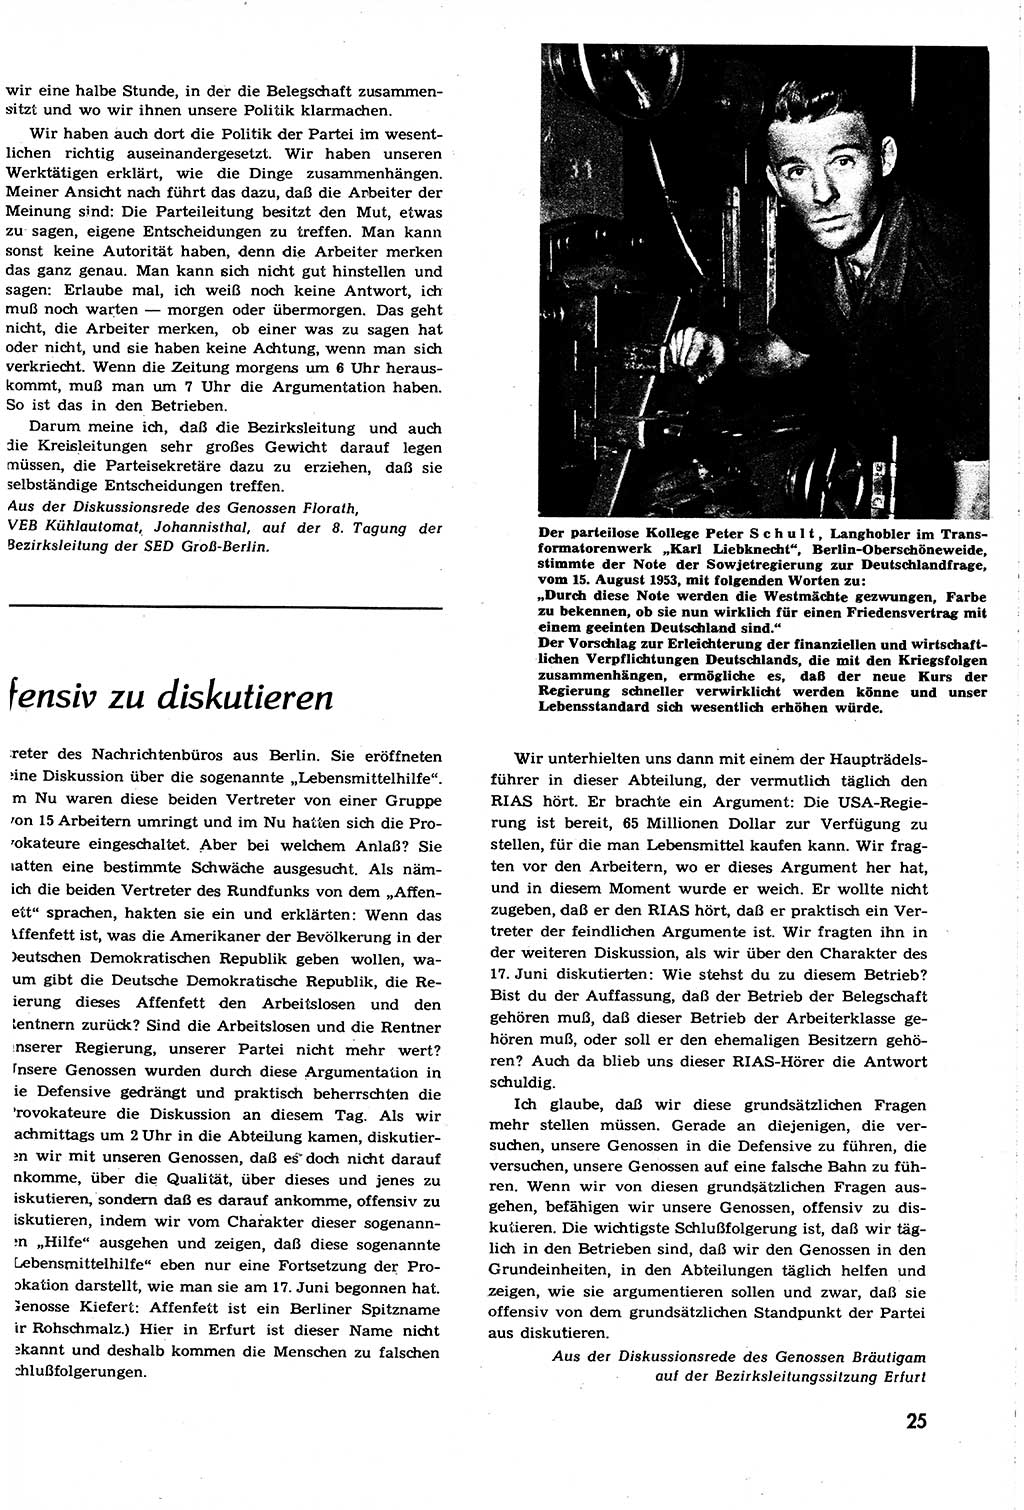 Neuer Weg (NW), Organ des Zentralkomitees (ZK) [Sozialistische Einheitspartei Deutschlands (SED)] für alle Parteiarbeiter, 8. Jahrgang [Deutsche Demokratische Republik (DDR)] 1953, Heft 16/25 (NW ZK SED DDR 1953, H. 16/25)